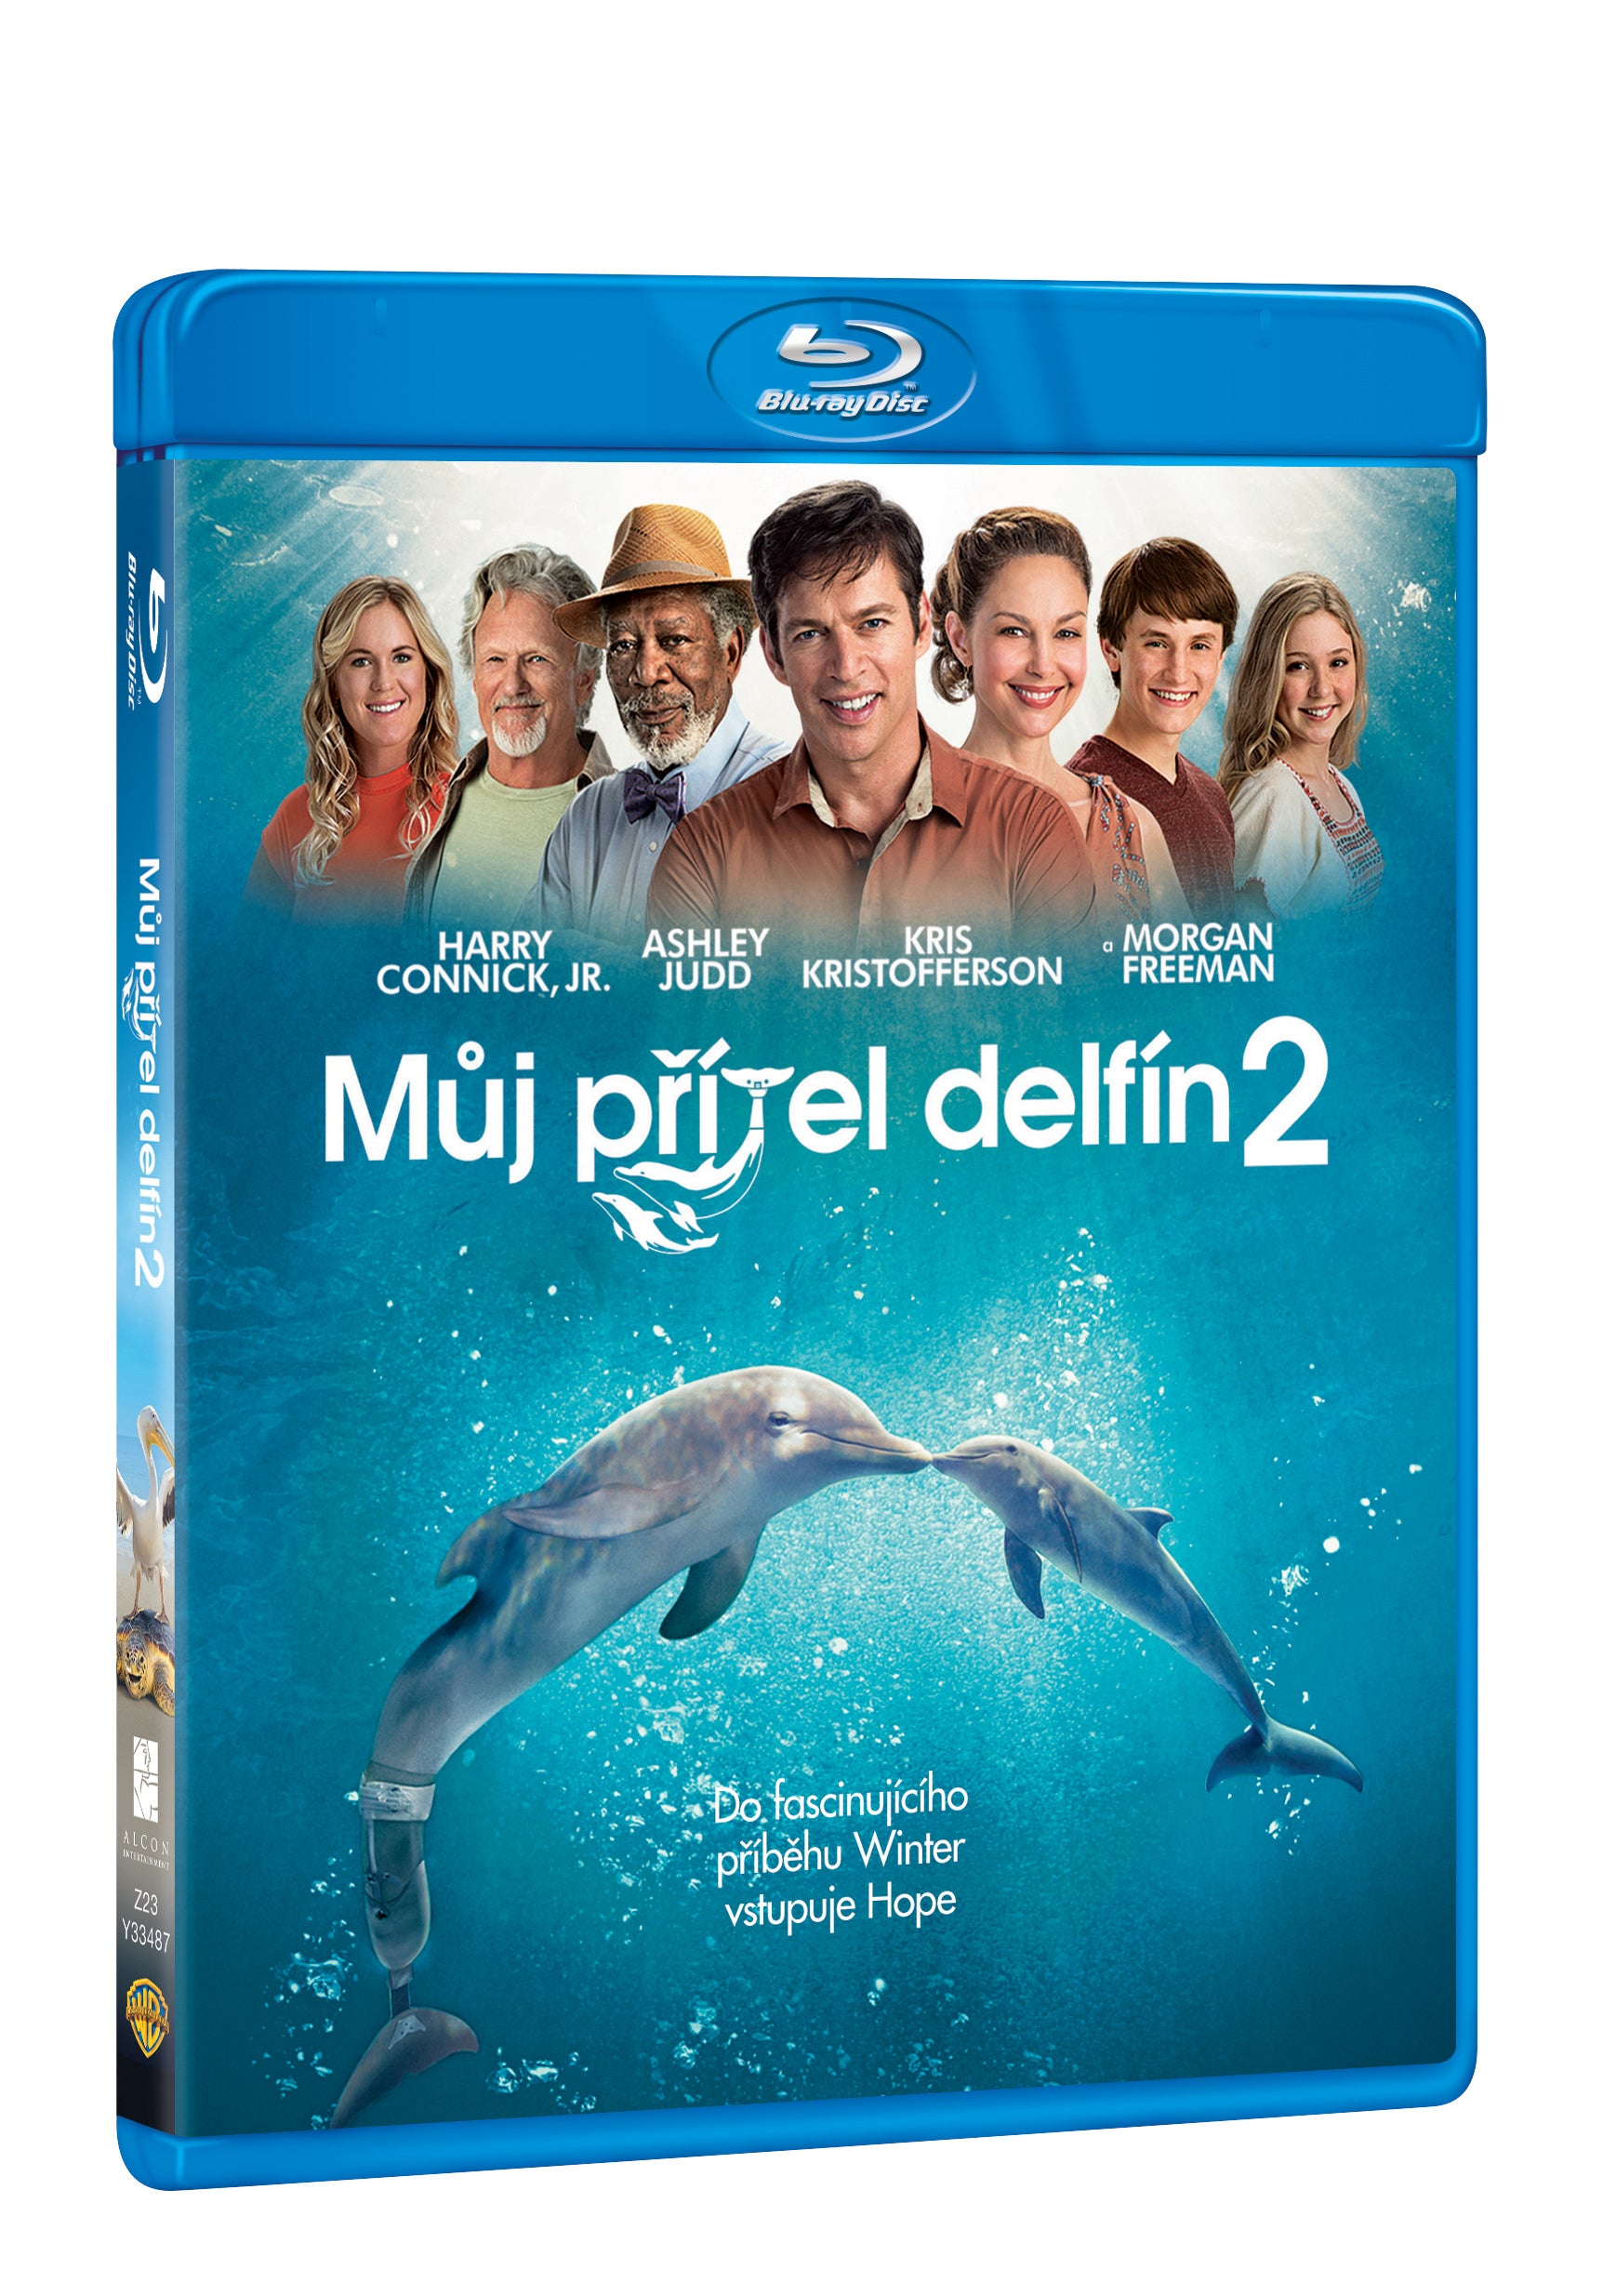 Muj pritel delfin 2. BD / Dolphin Tale 2 - Czech version